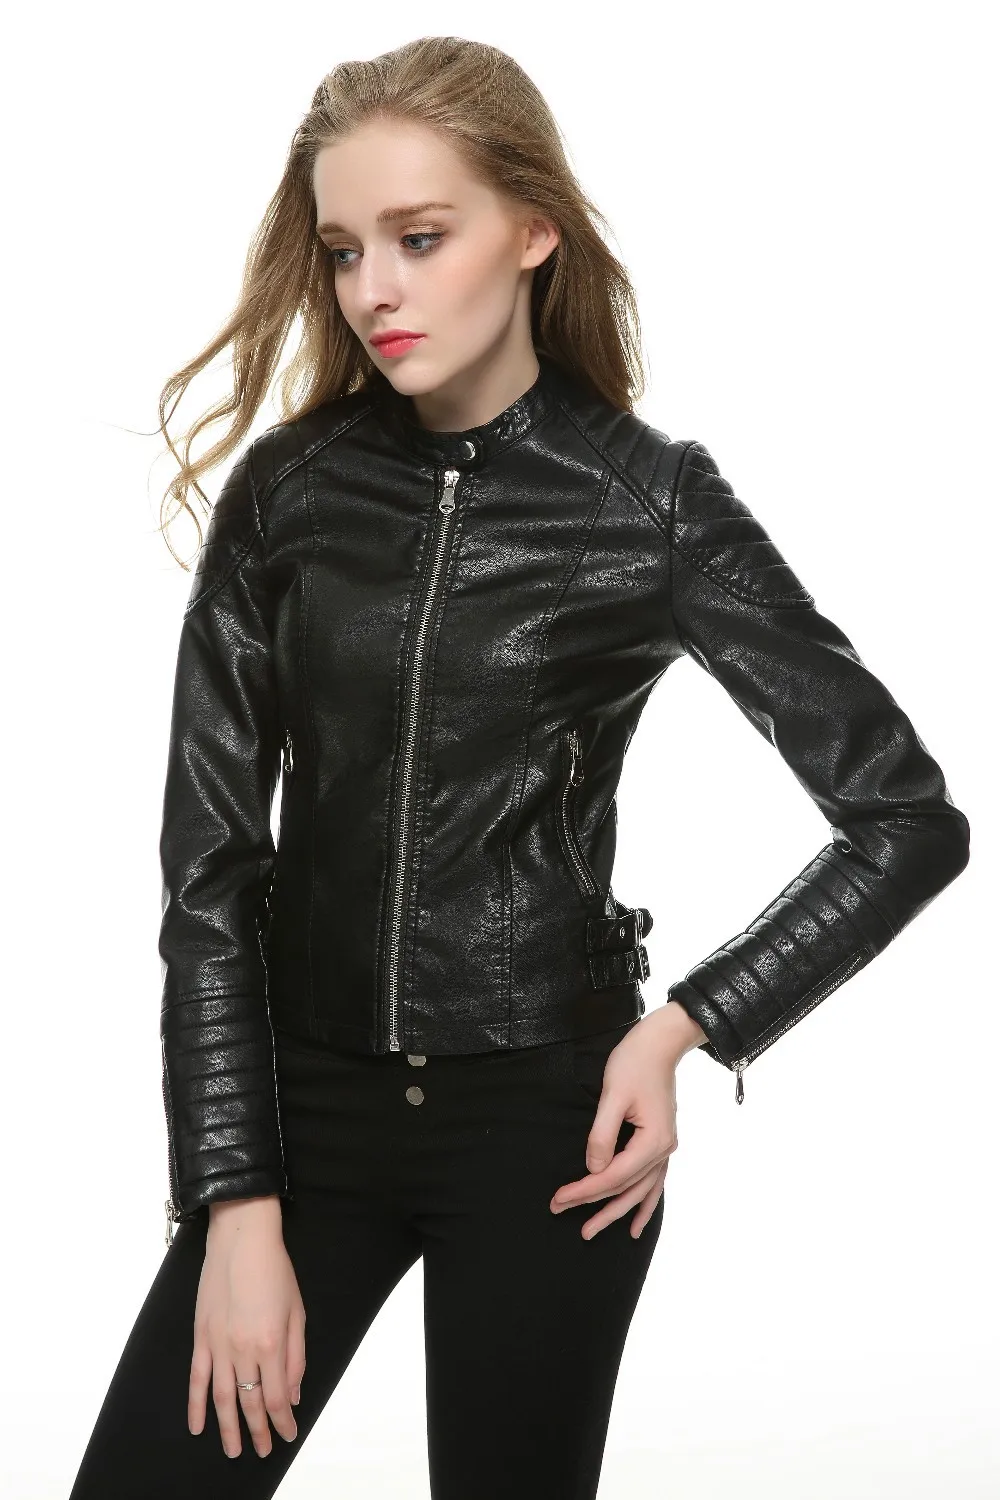 2018 Fashion Women Elegant Zipper Faux Leather Biker Jacket in Brown ...